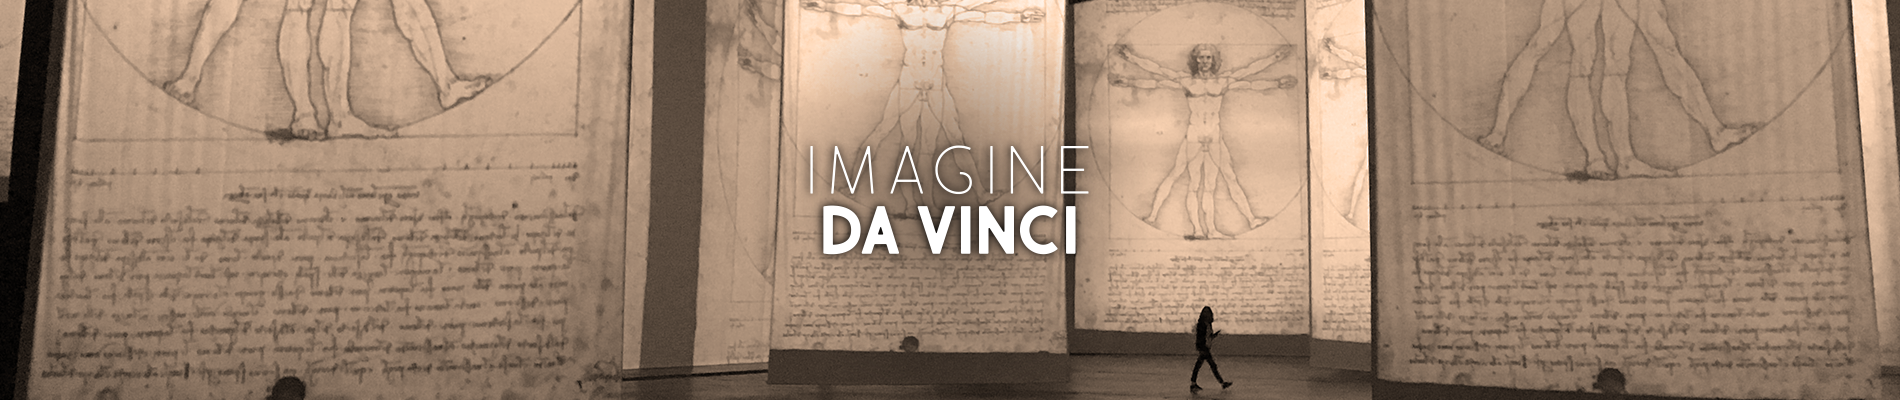 Banner Imagine Da Vinci immersive exhibition